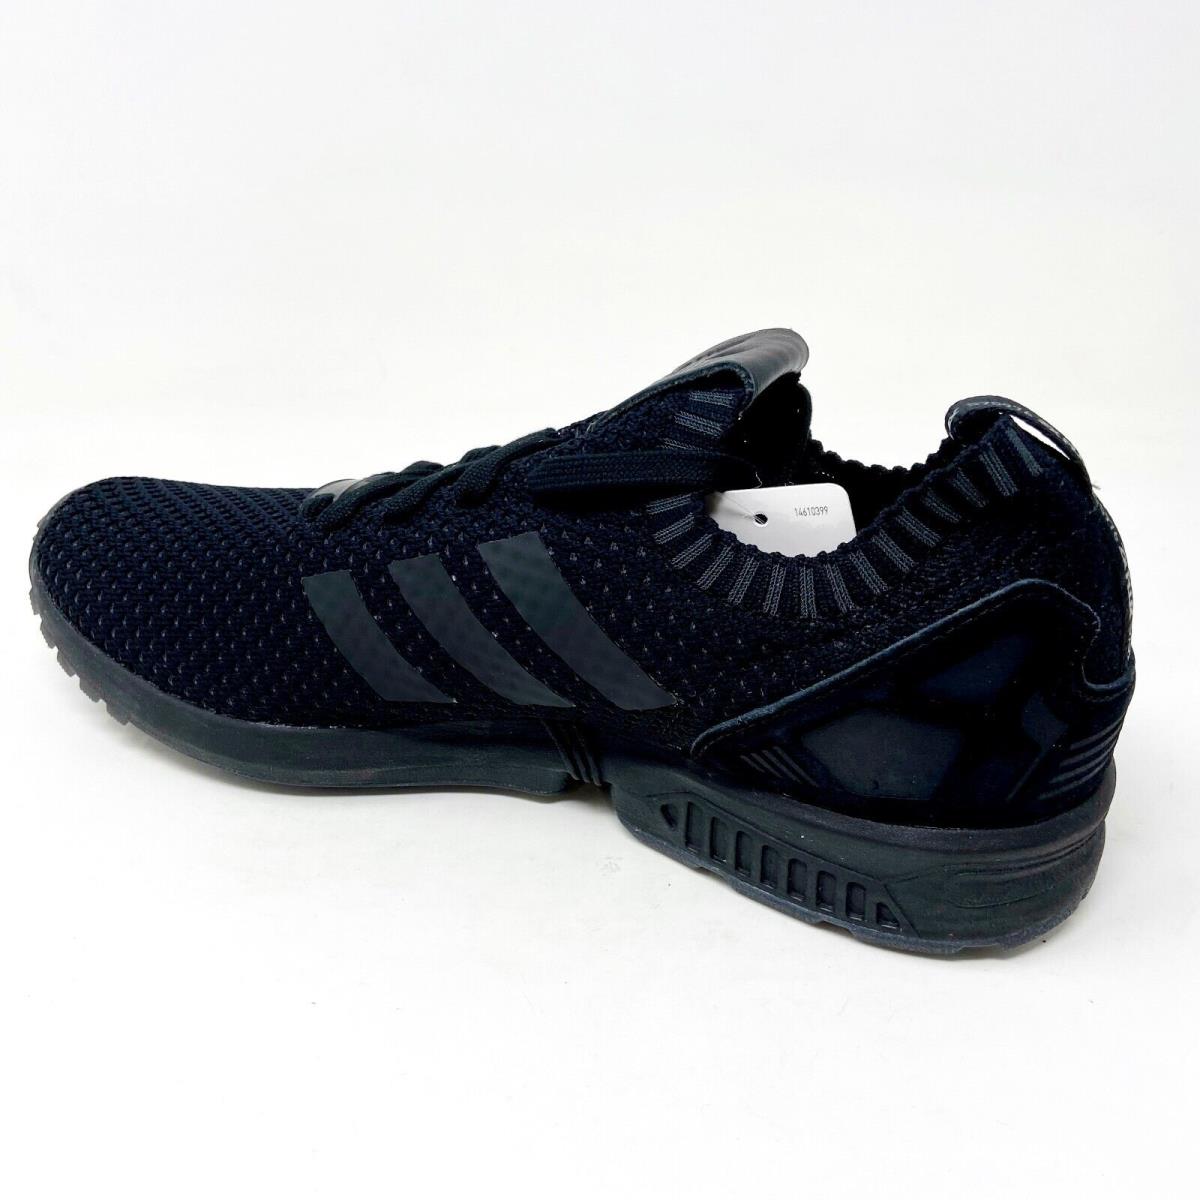 Adidas shoes Flux - Black 1